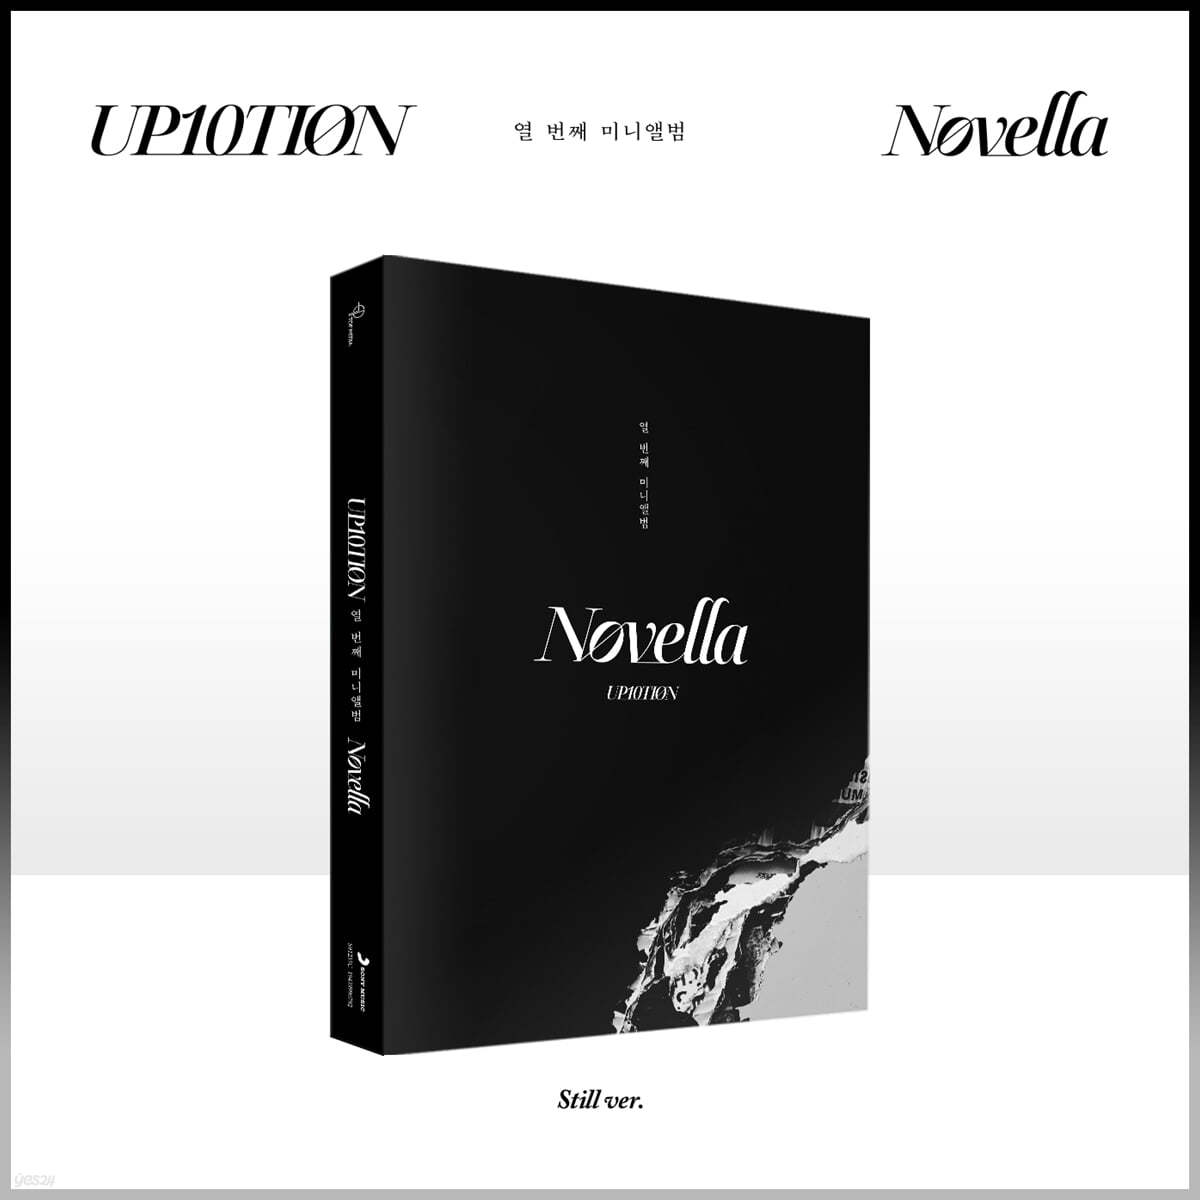 업텐션 (UP10TION) - 미니앨범 10집 : Novella [Still ver.]